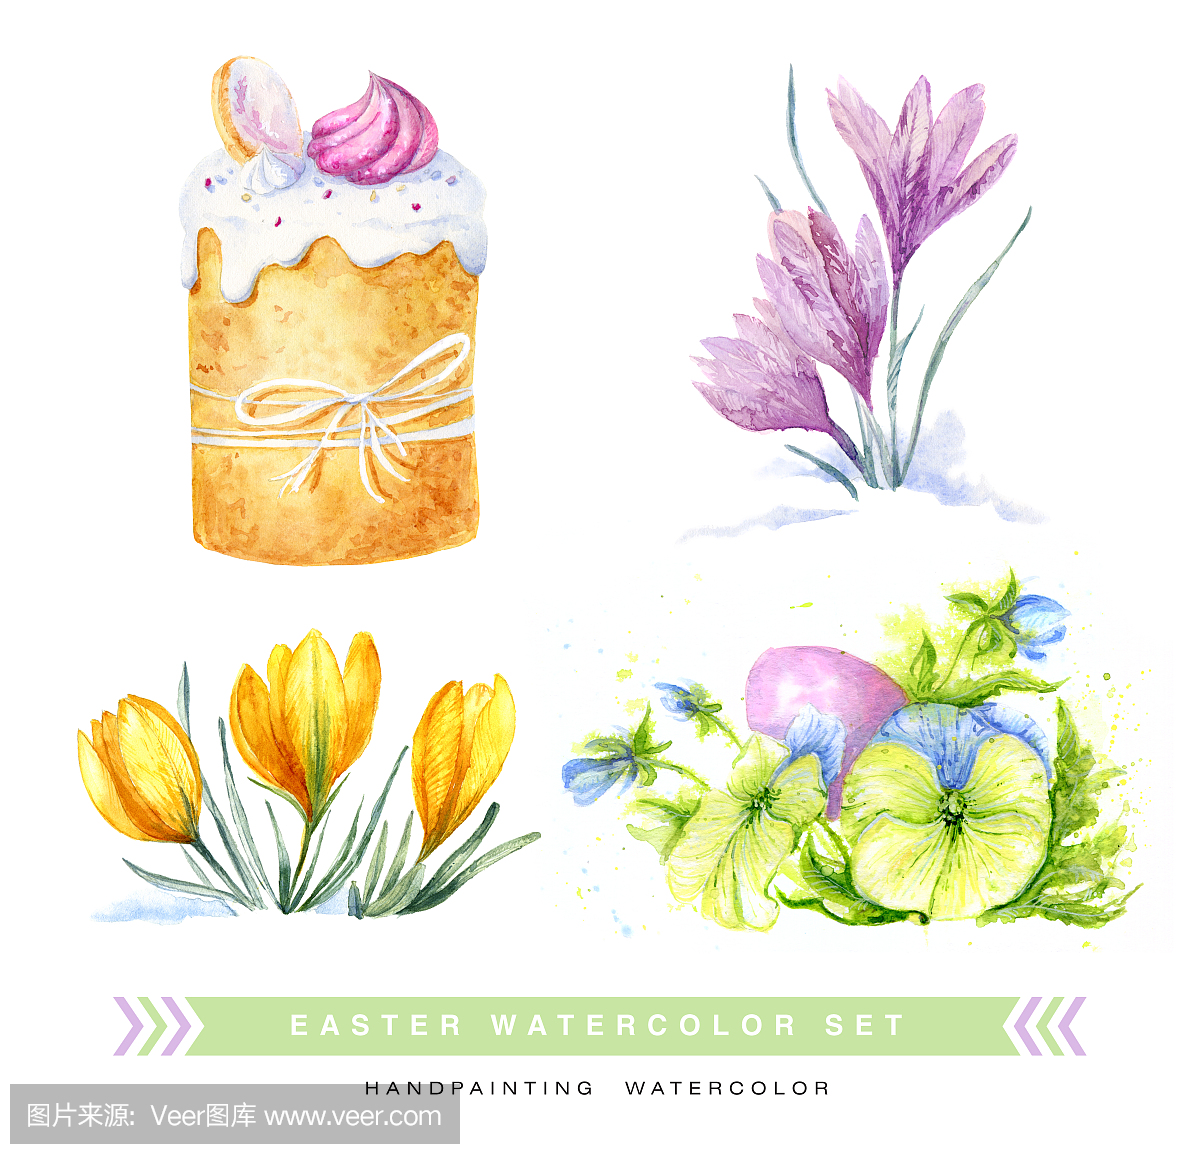 复活节蛋糕和鸡蛋和春天的花朵画水彩画集。蓝